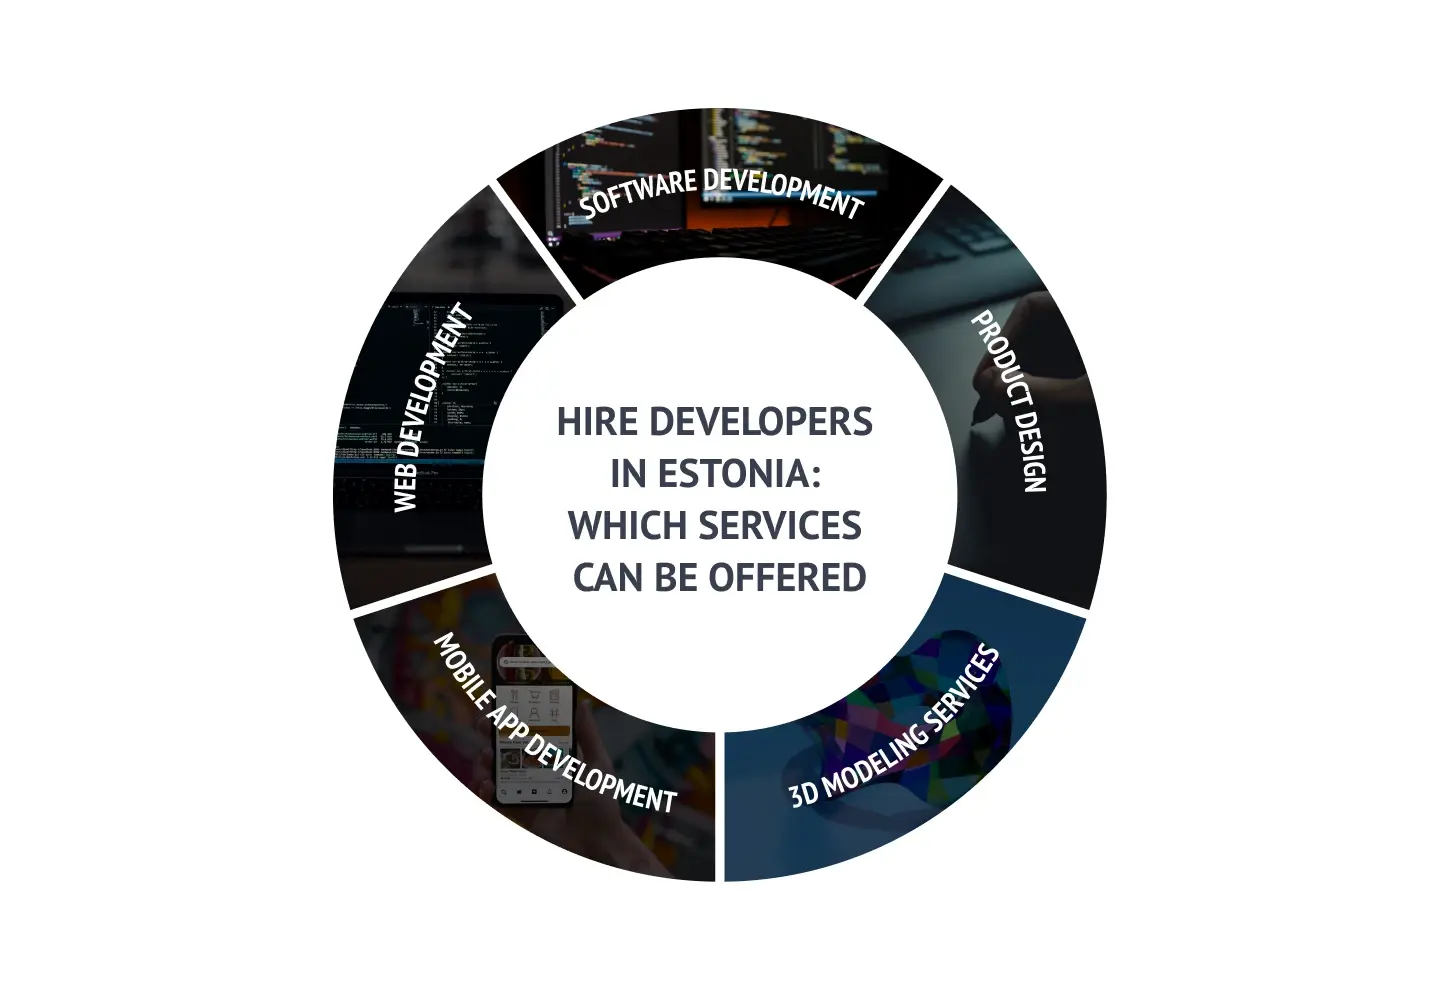 Hire developers in Estonia: Services